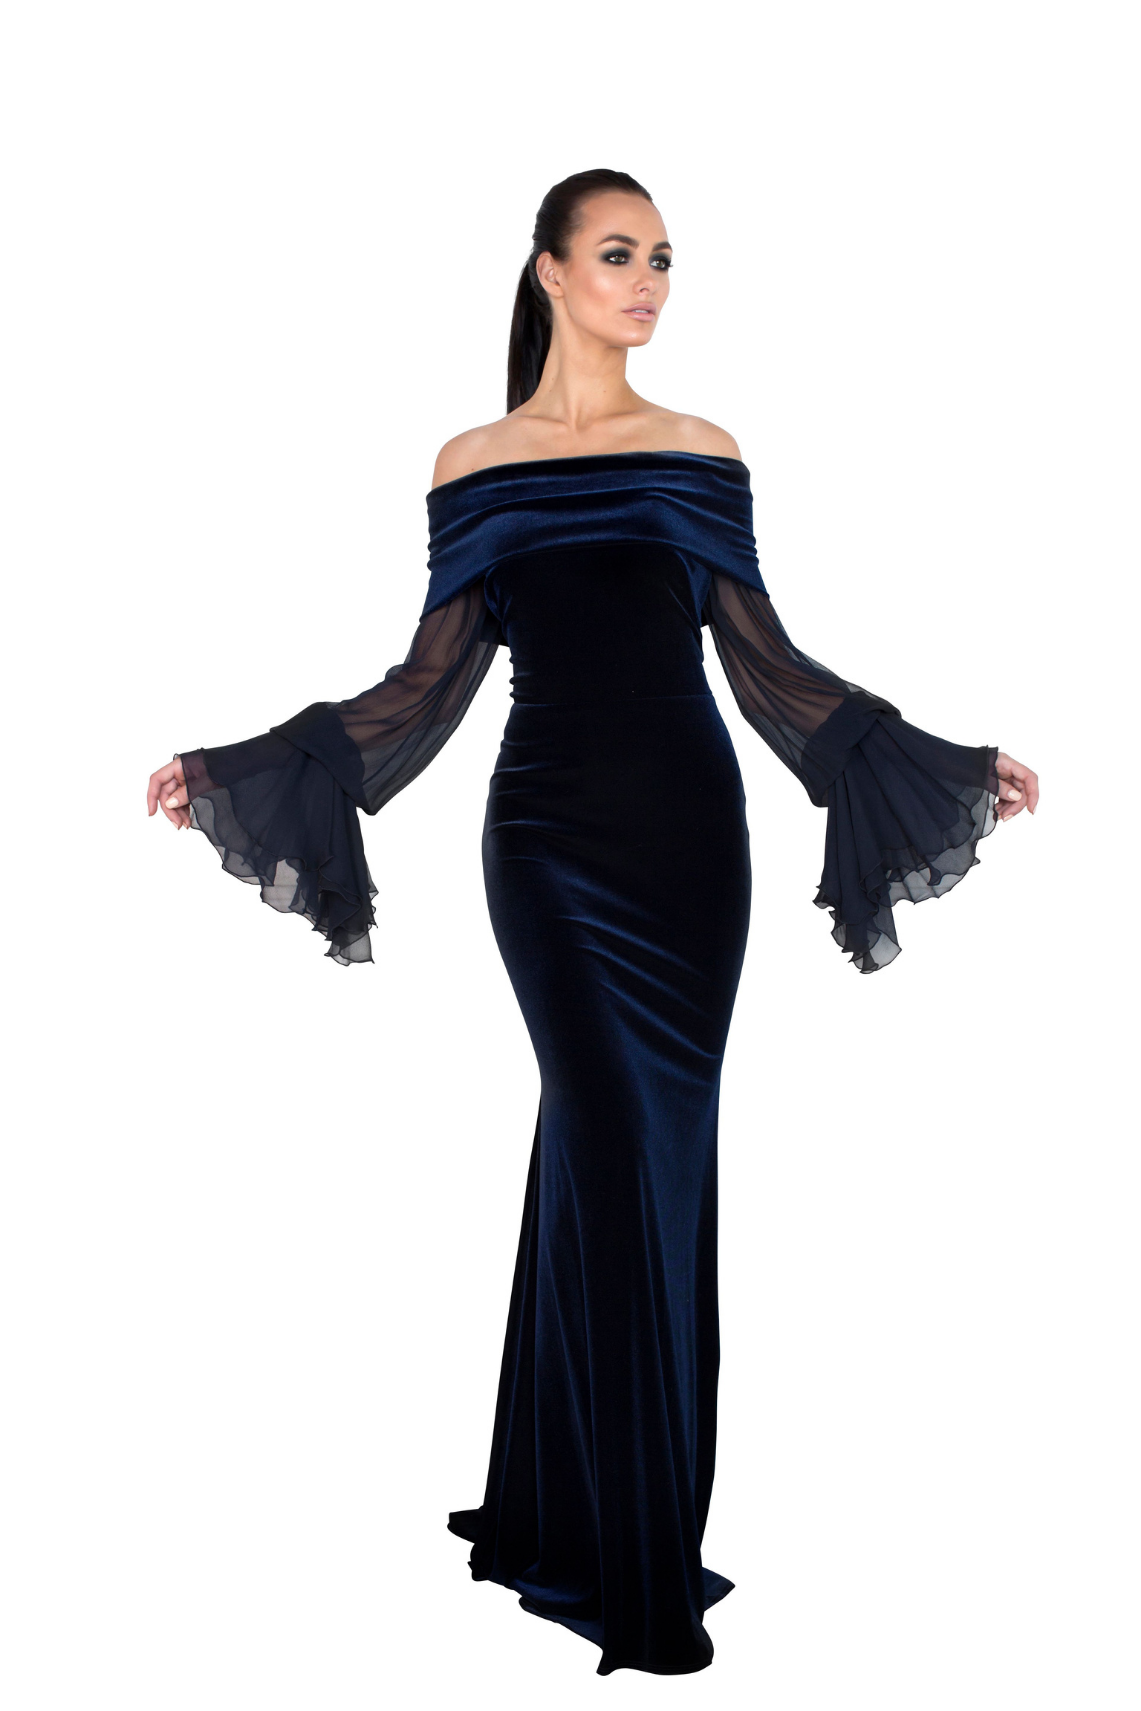 Model wearing a dark blue evening dress